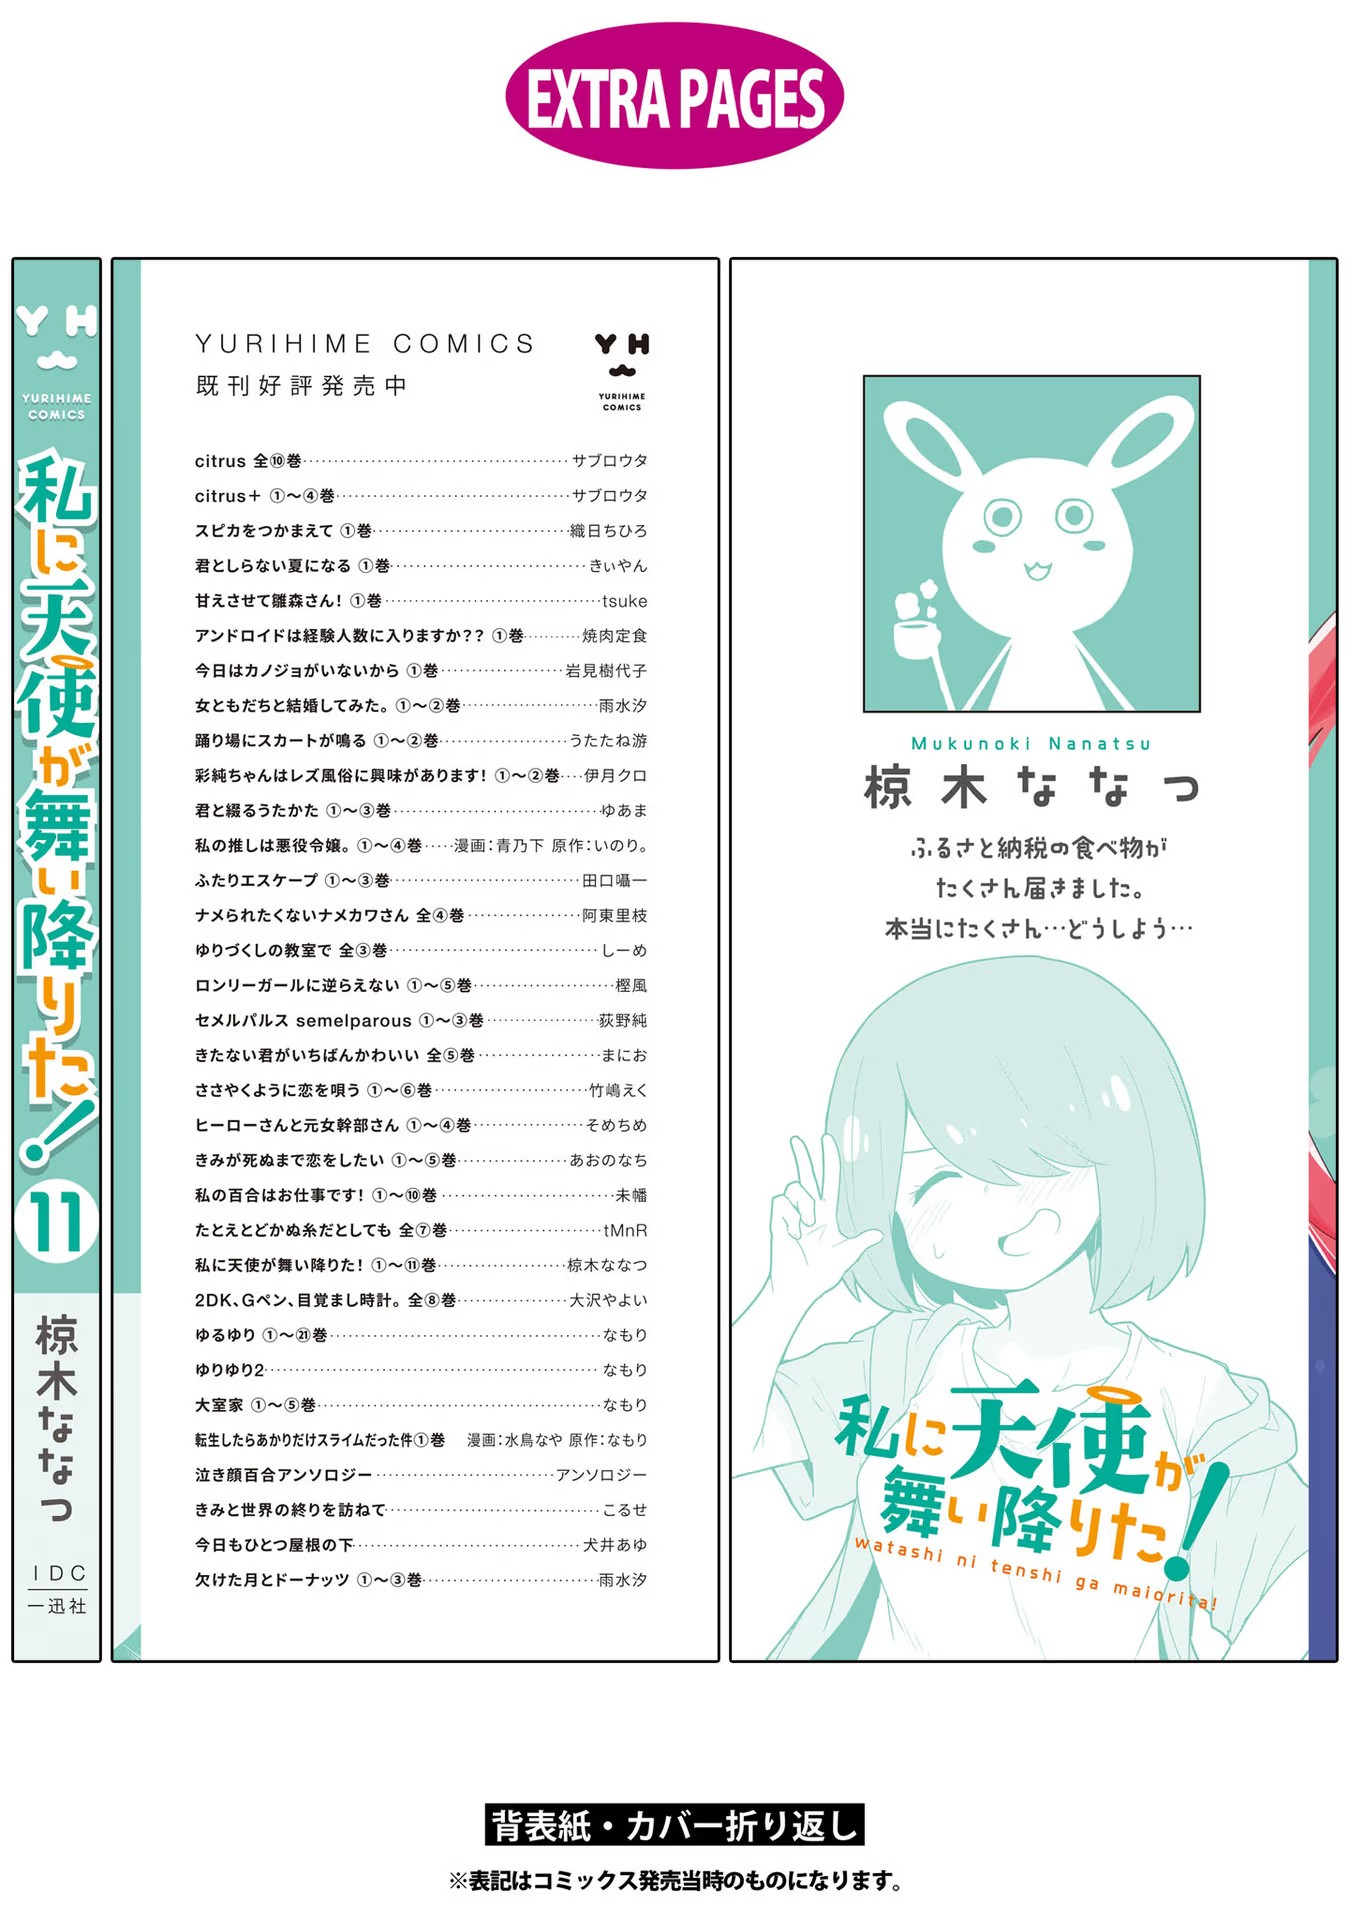 Watashi ni Tenshi ga Maiorita! - Chapter 93.5-2 - Page 8